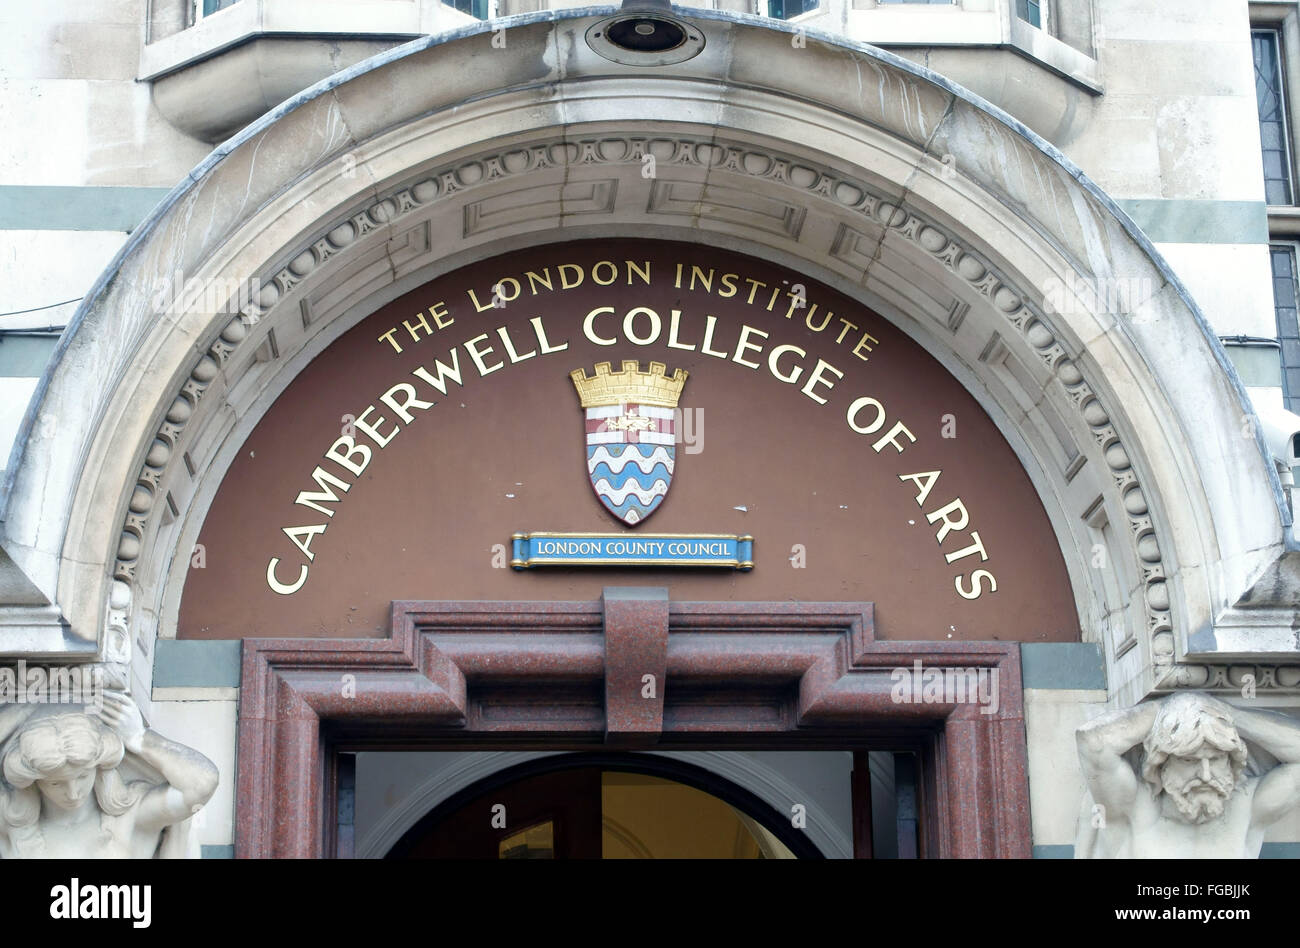 Camberwell College of Arts (Université des Arts), Camberwell, dans le sud de Londres Banque D'Images